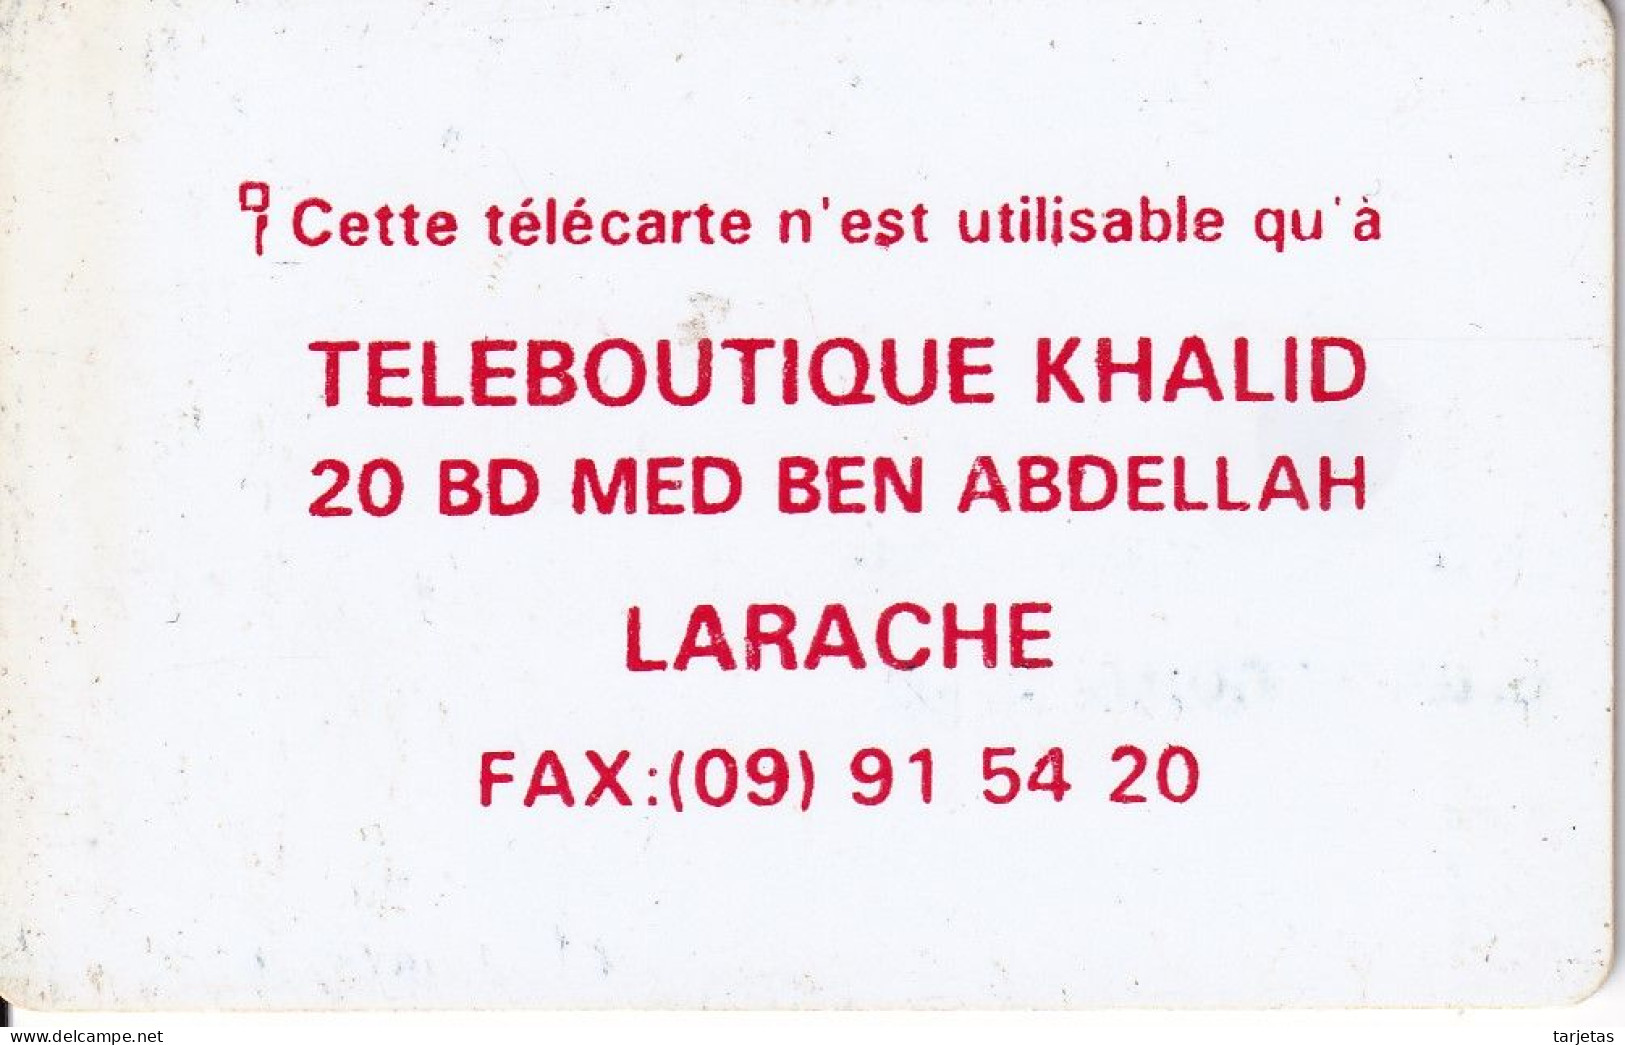 TARJETA DE MARRUECOS DE ALFATEL DE 100 UNITES CON PUBLICIDAD TELEBOUTIQUE KHALID EN LARACHE - Marocco